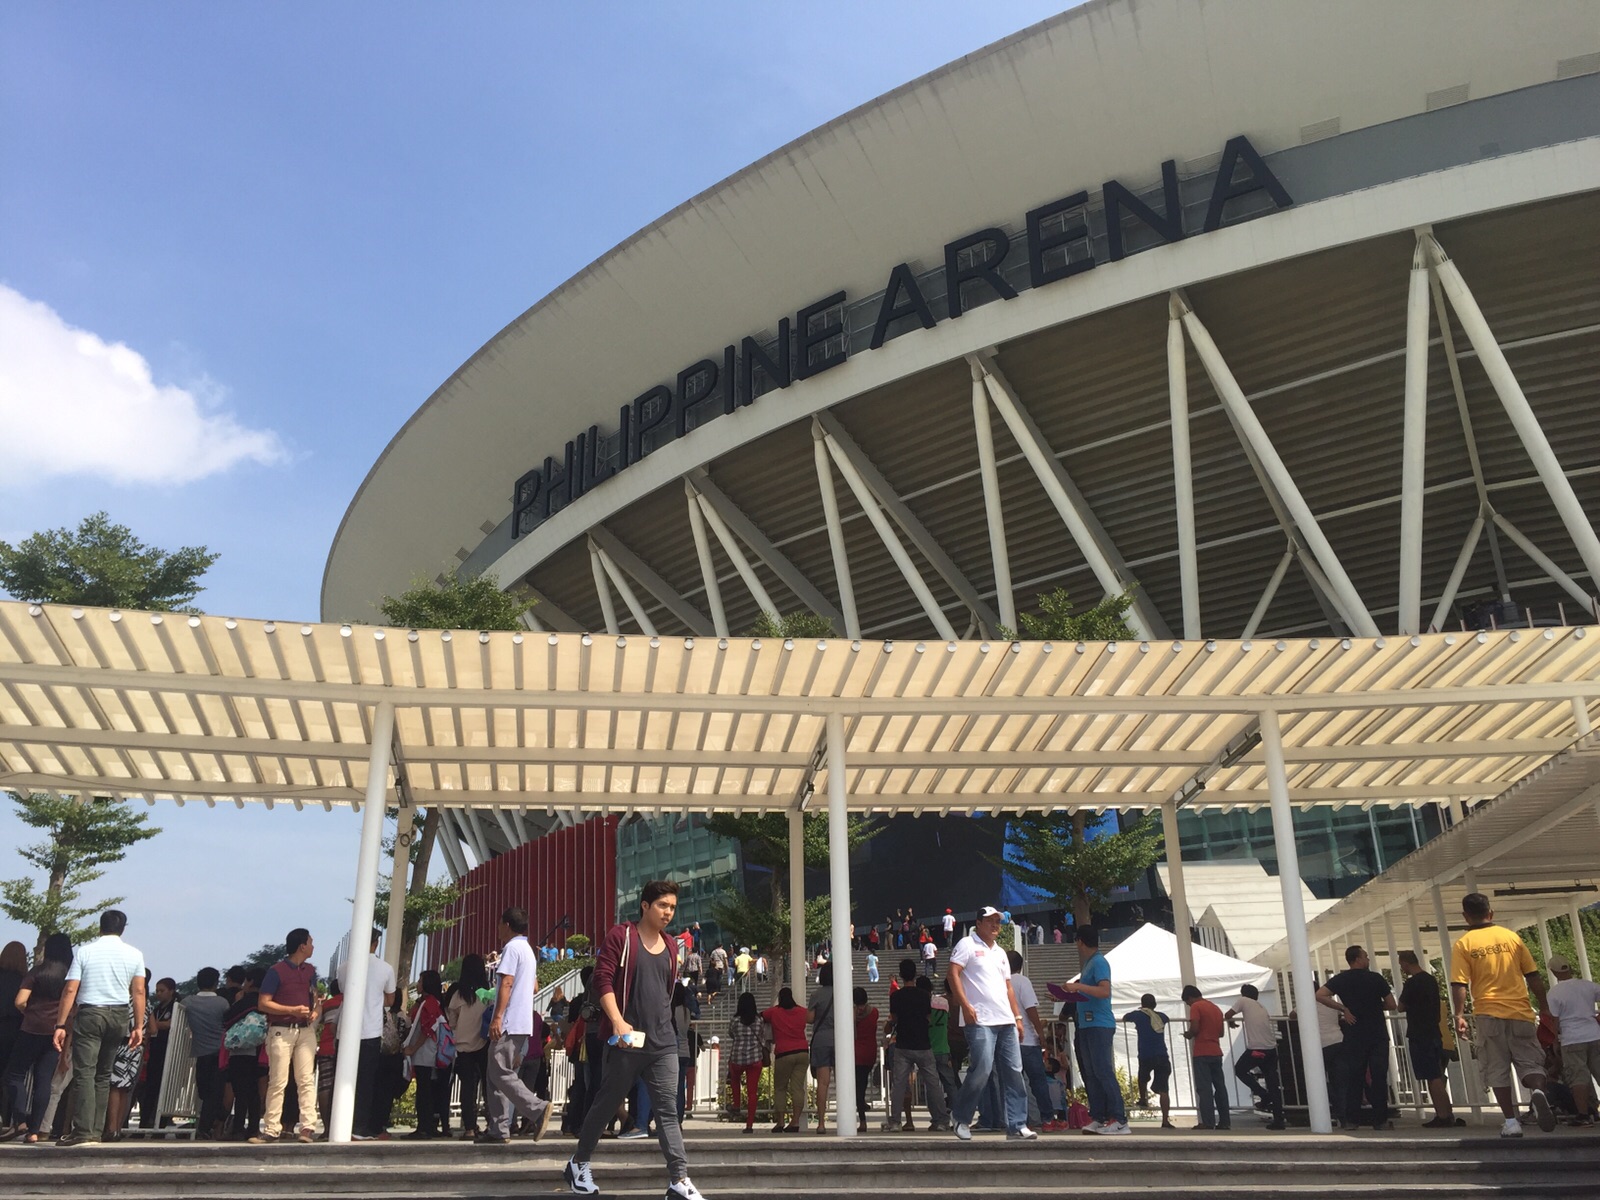 philippine arena update april 2022